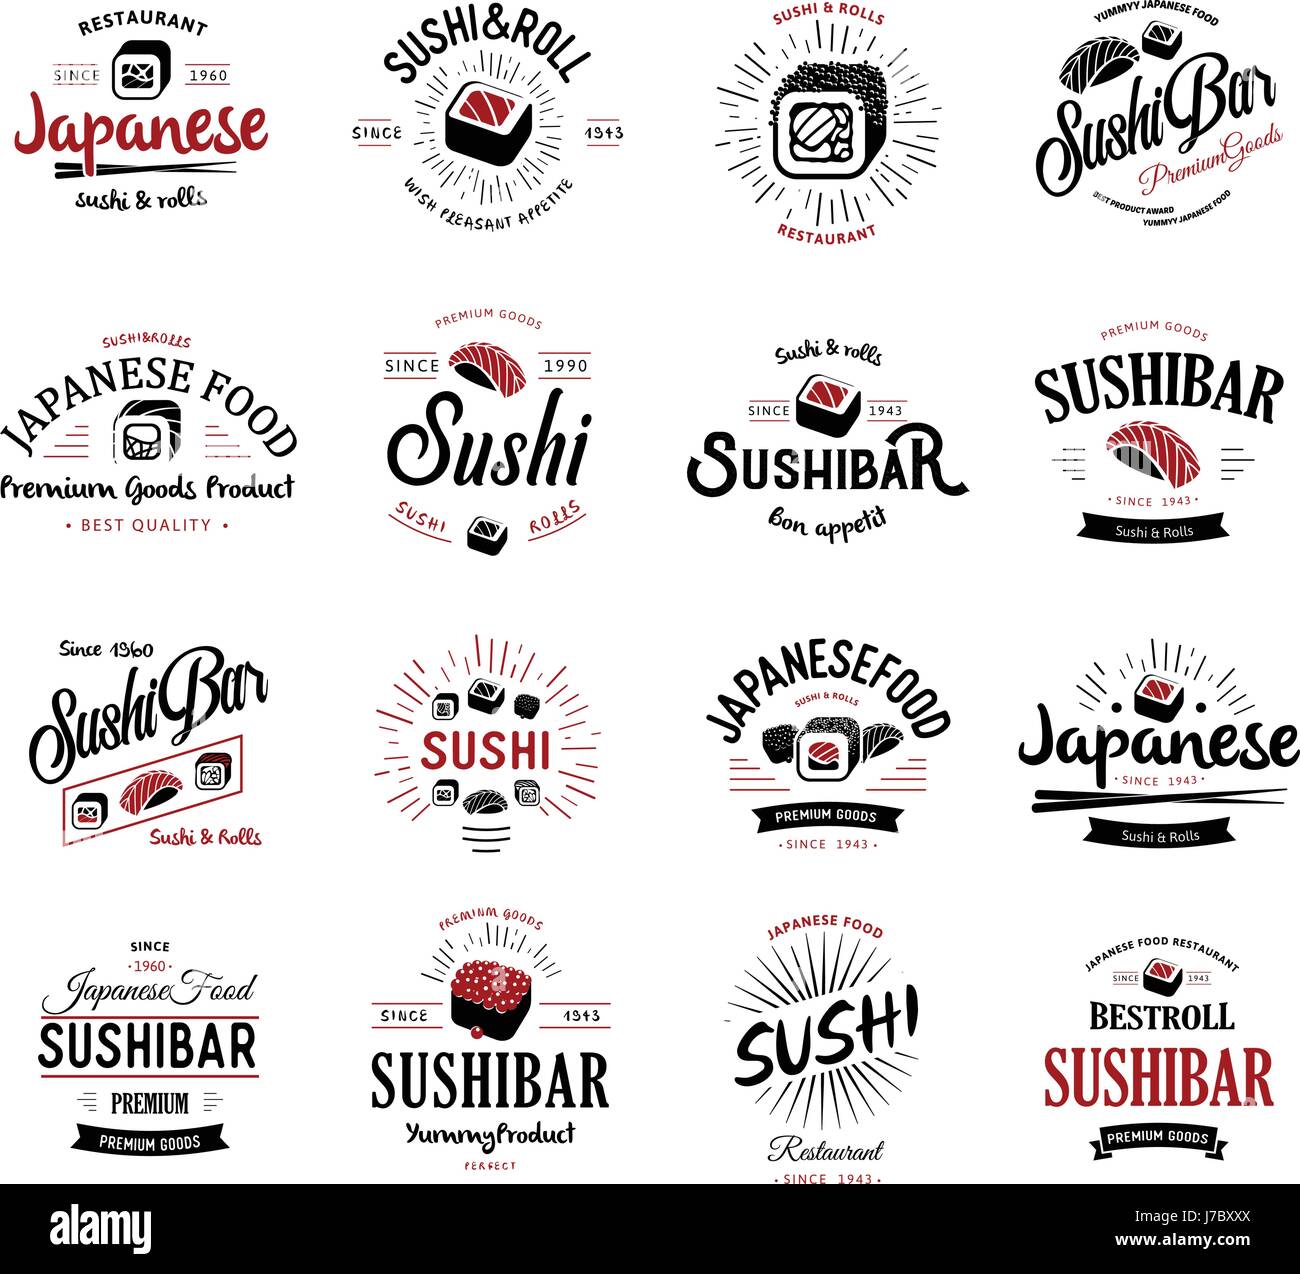 Eine große Menge von Vektor-Logos und Embleme für Restaurants der japanischen Küche im retro-Stil mit Schriftzügen und Symbolen und die Form der Sushi, Roll, Stäbchen, Bänder und Strahlen. Label und Illustration Gruppe. Stock Vektor